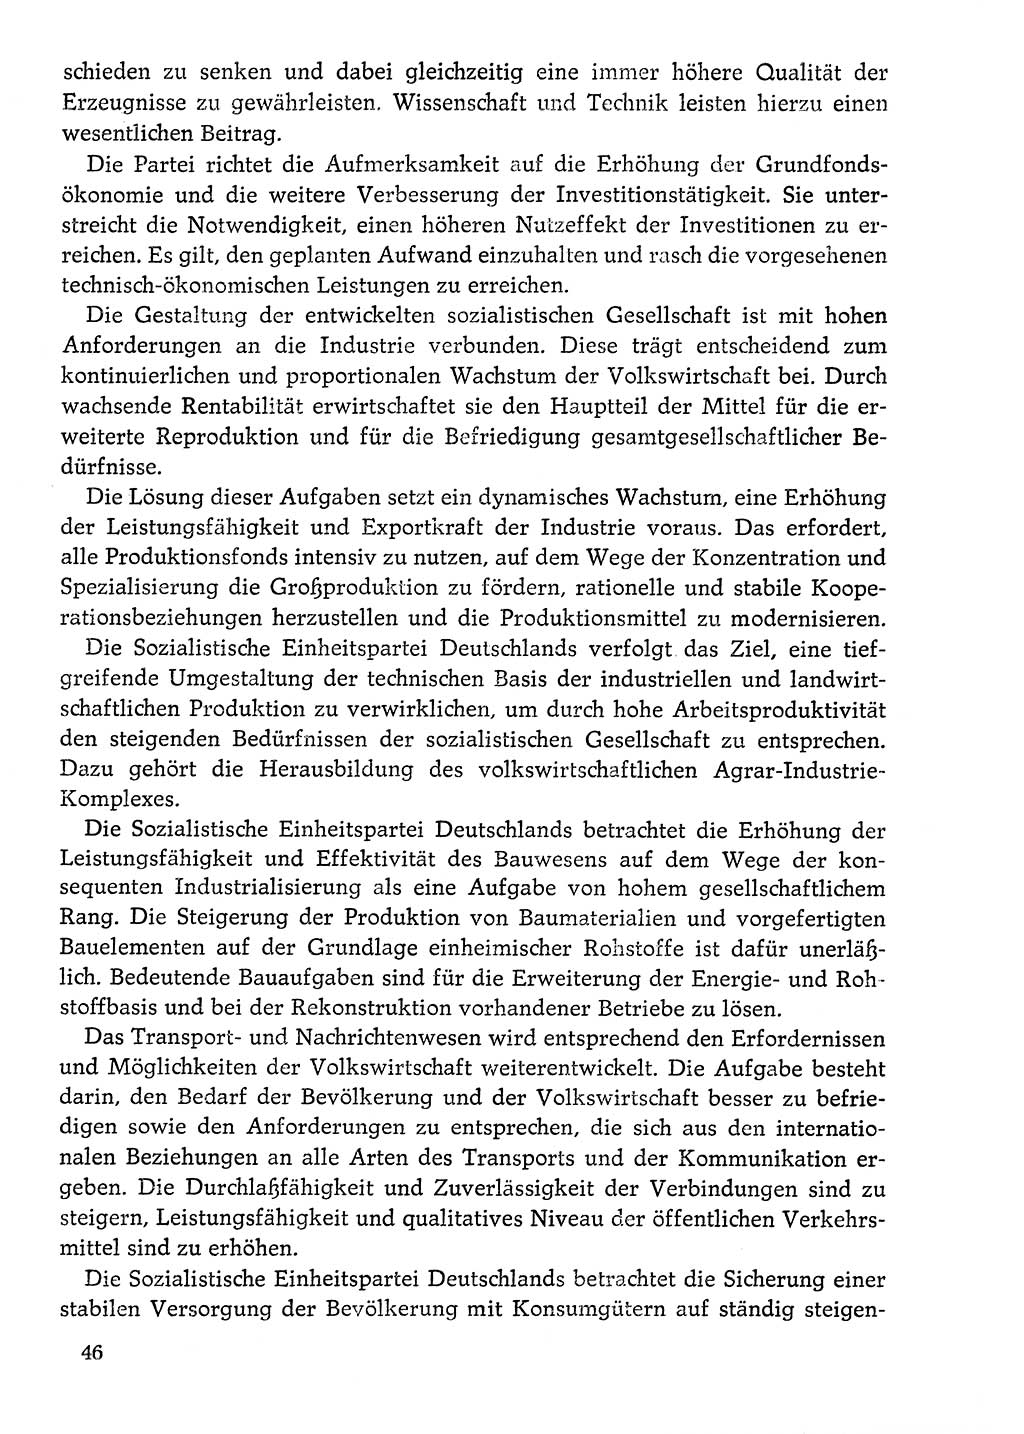 Dokumente der Sozialistischen Einheitspartei Deutschlands (SED) [Deutsche Demokratische Republik (DDR)] 1976-1977, Seite 46 (Dok. SED DDR 1976-1977, S. 46)